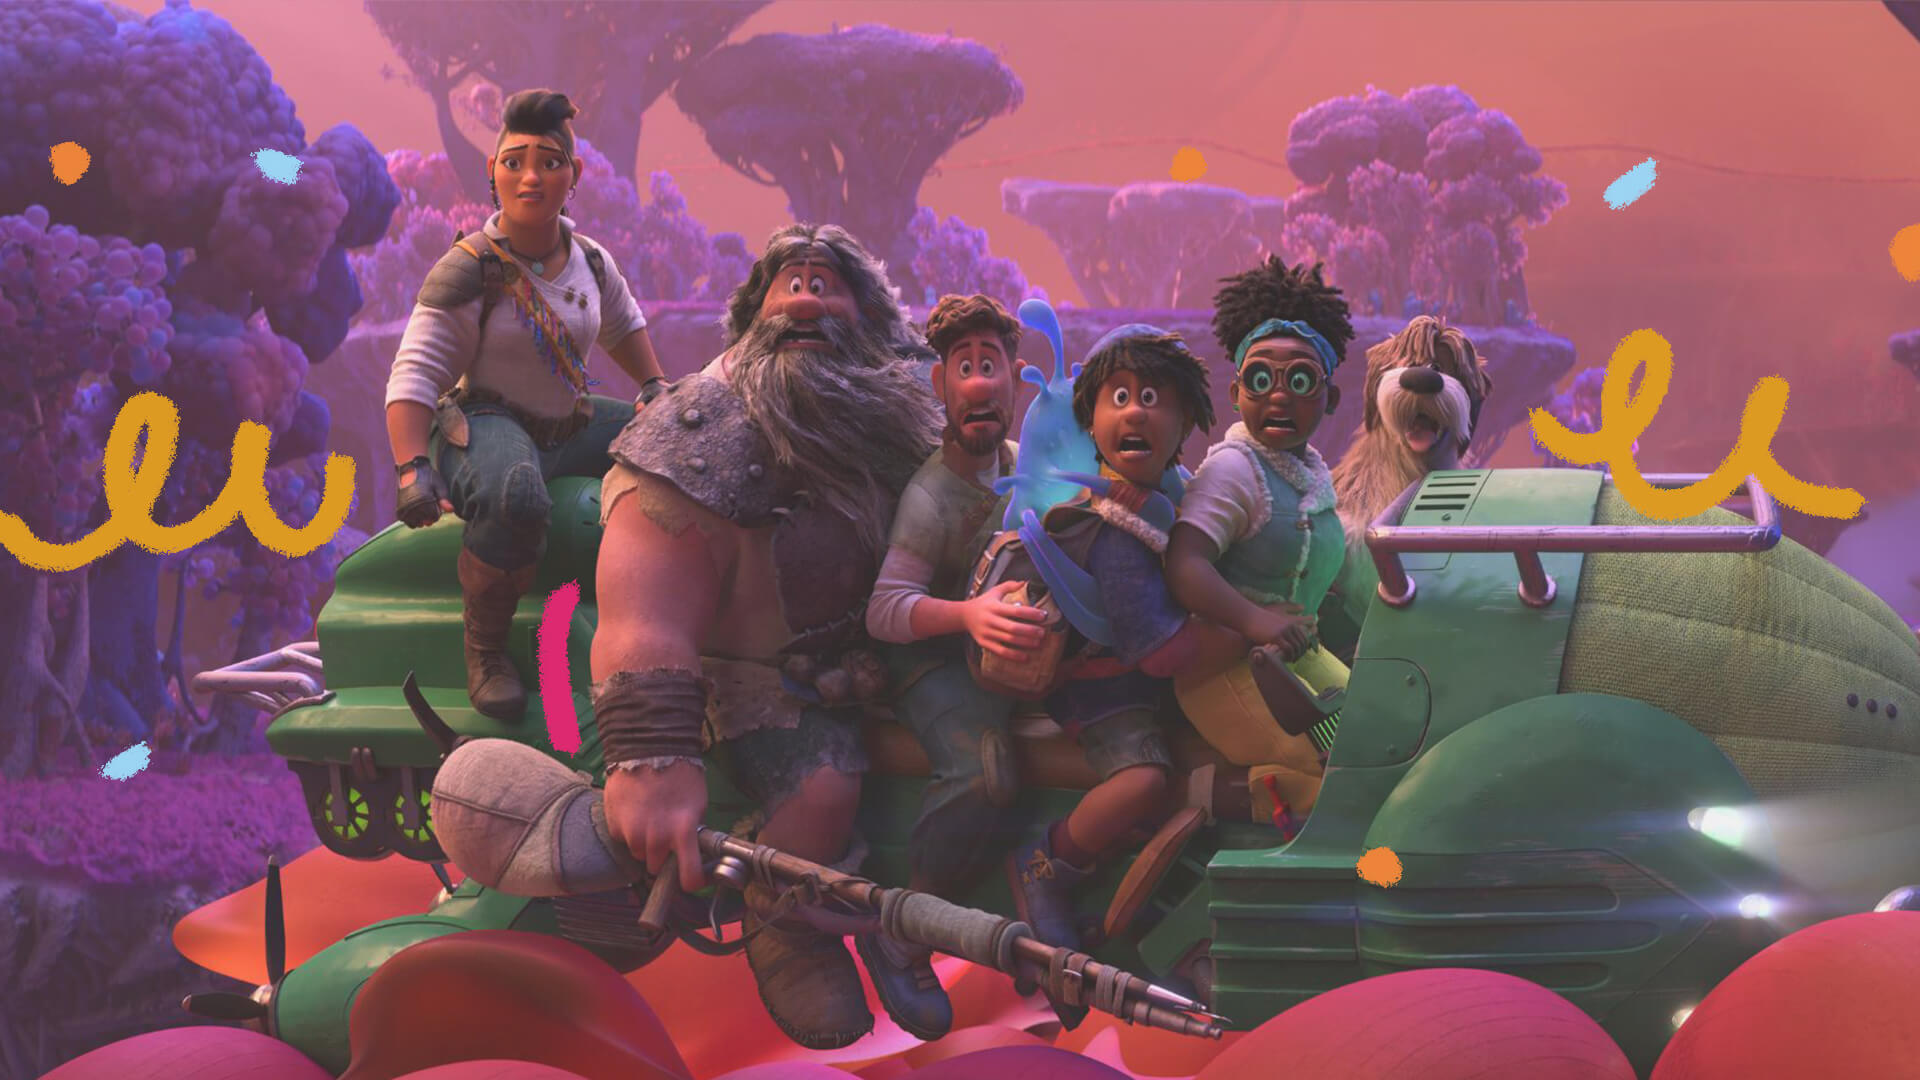 Cena do filme "Mundo estranho", da Disney, em que os personagens estão em uma expedição no mar.